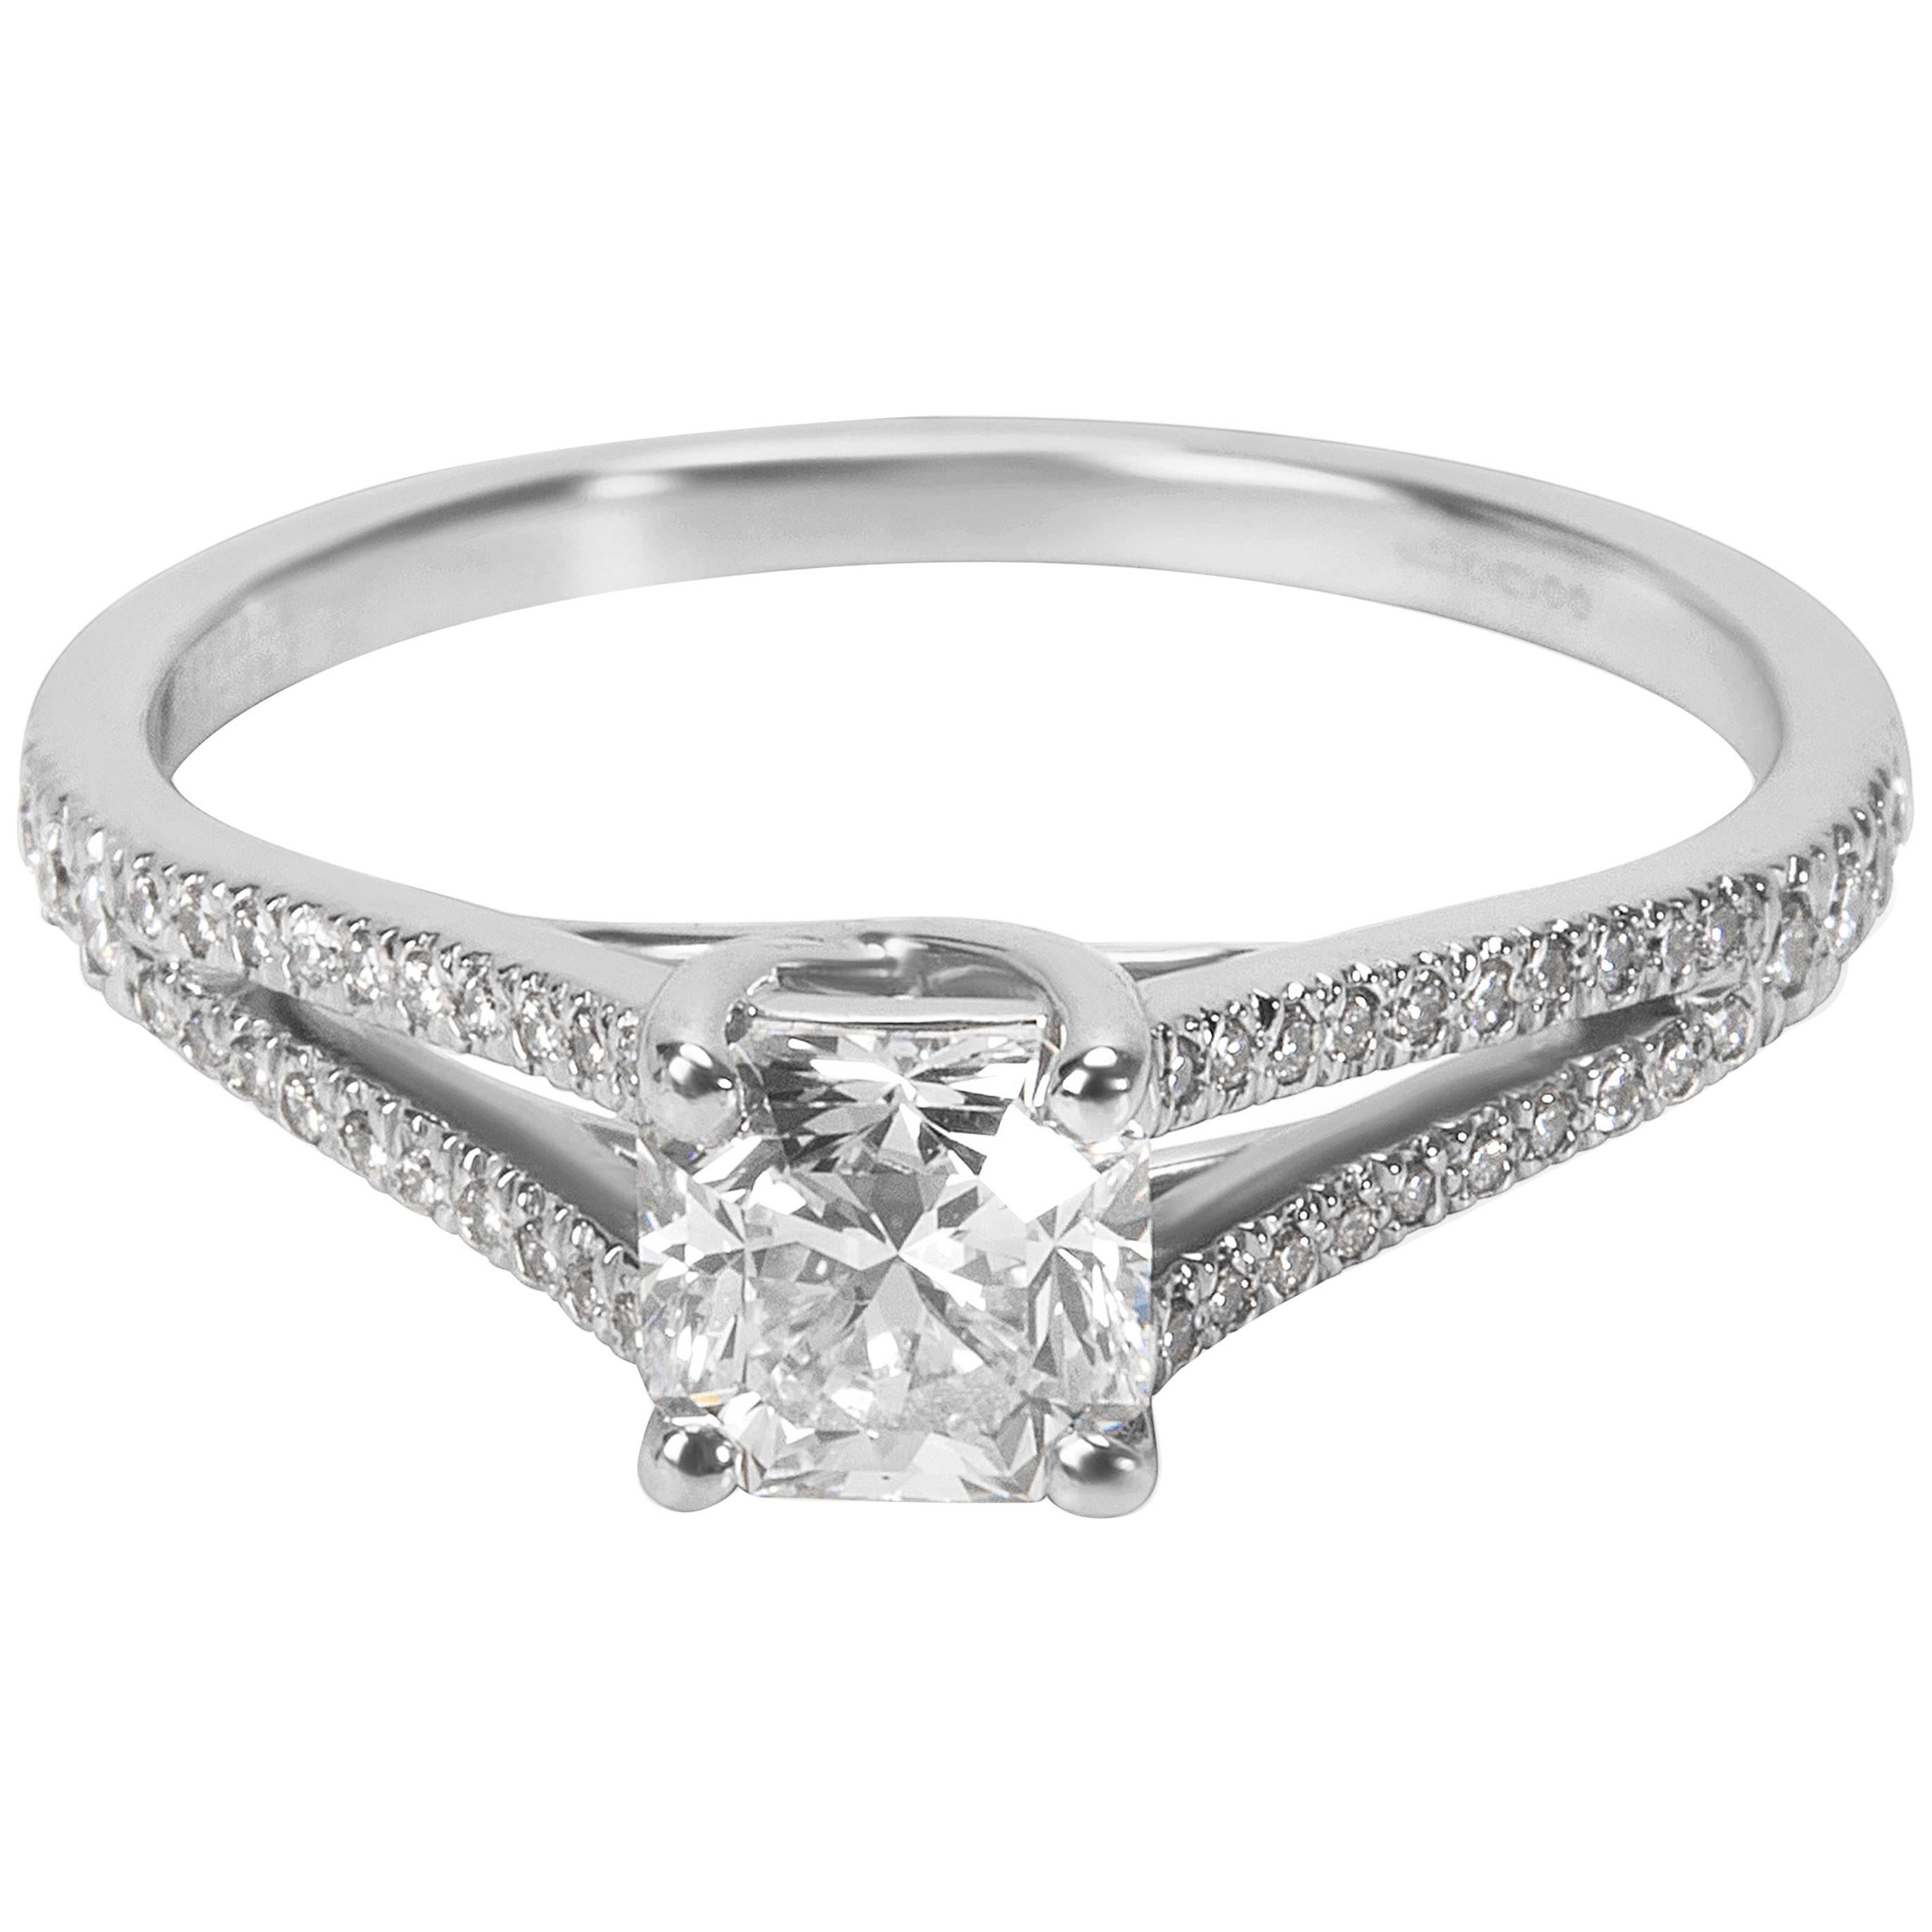 Tiffany & Co. Lucida Diamond Engagement Ring in Platinum 0.67 Carat